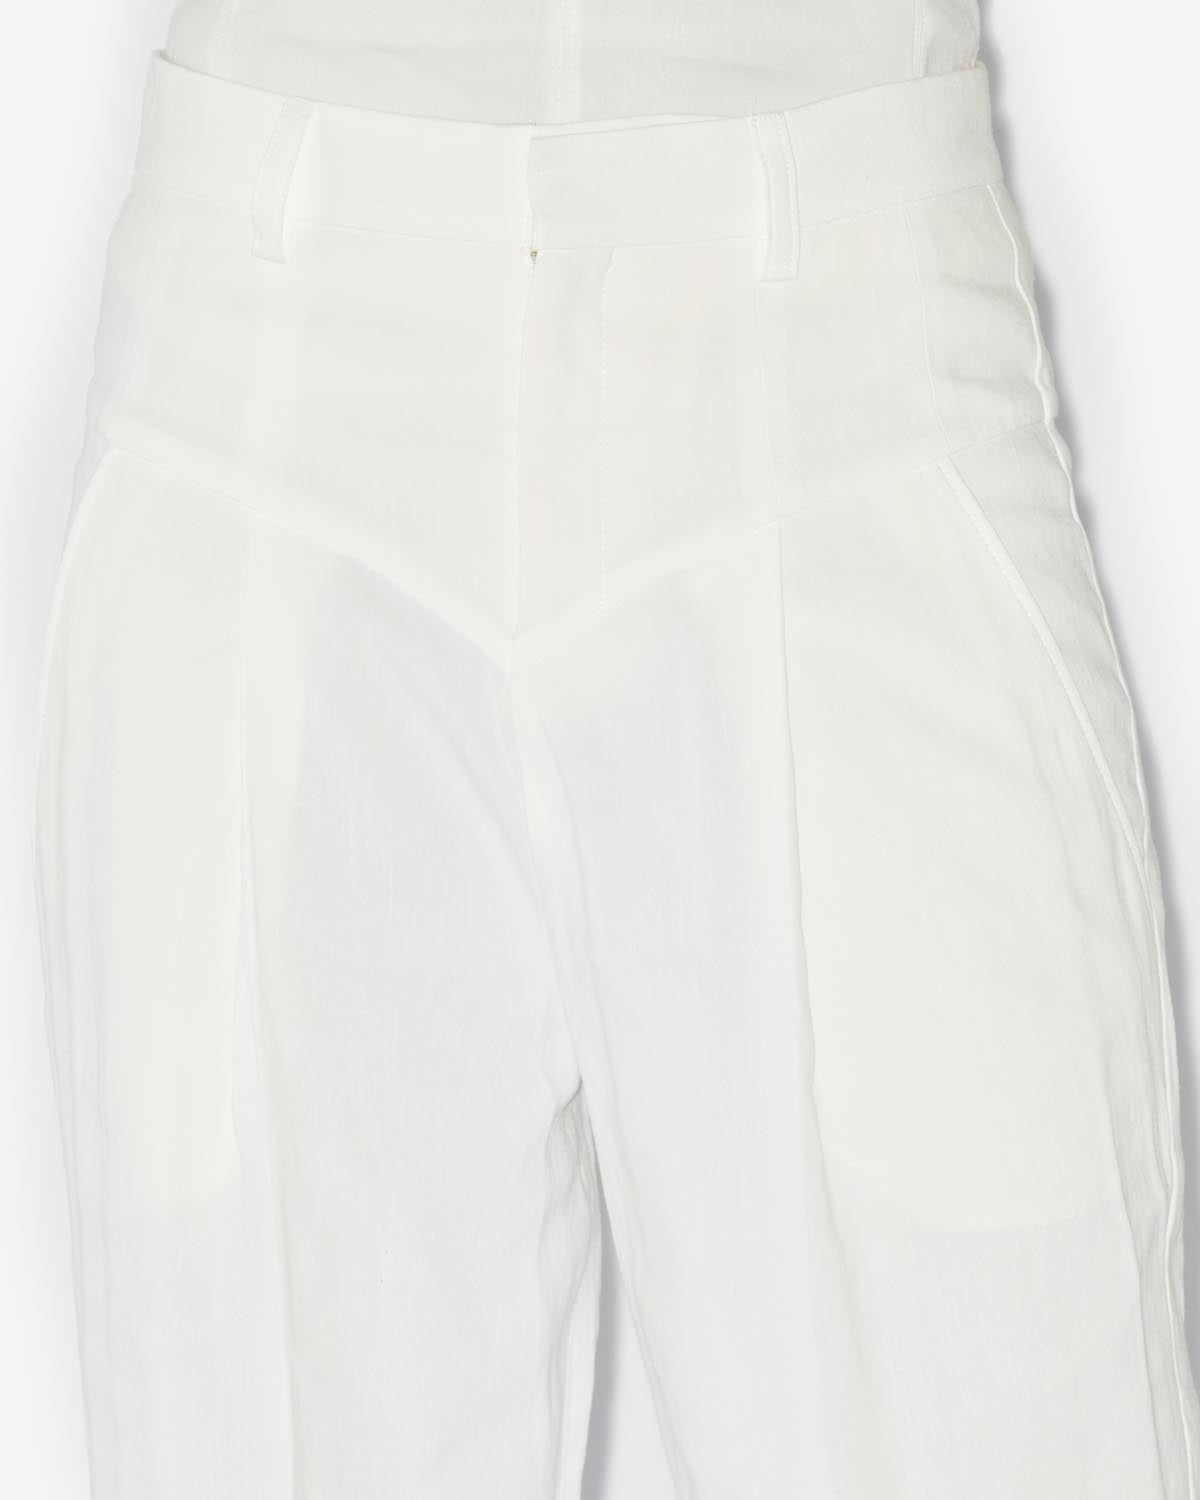 Staya pantaloni Woman Bianco 2